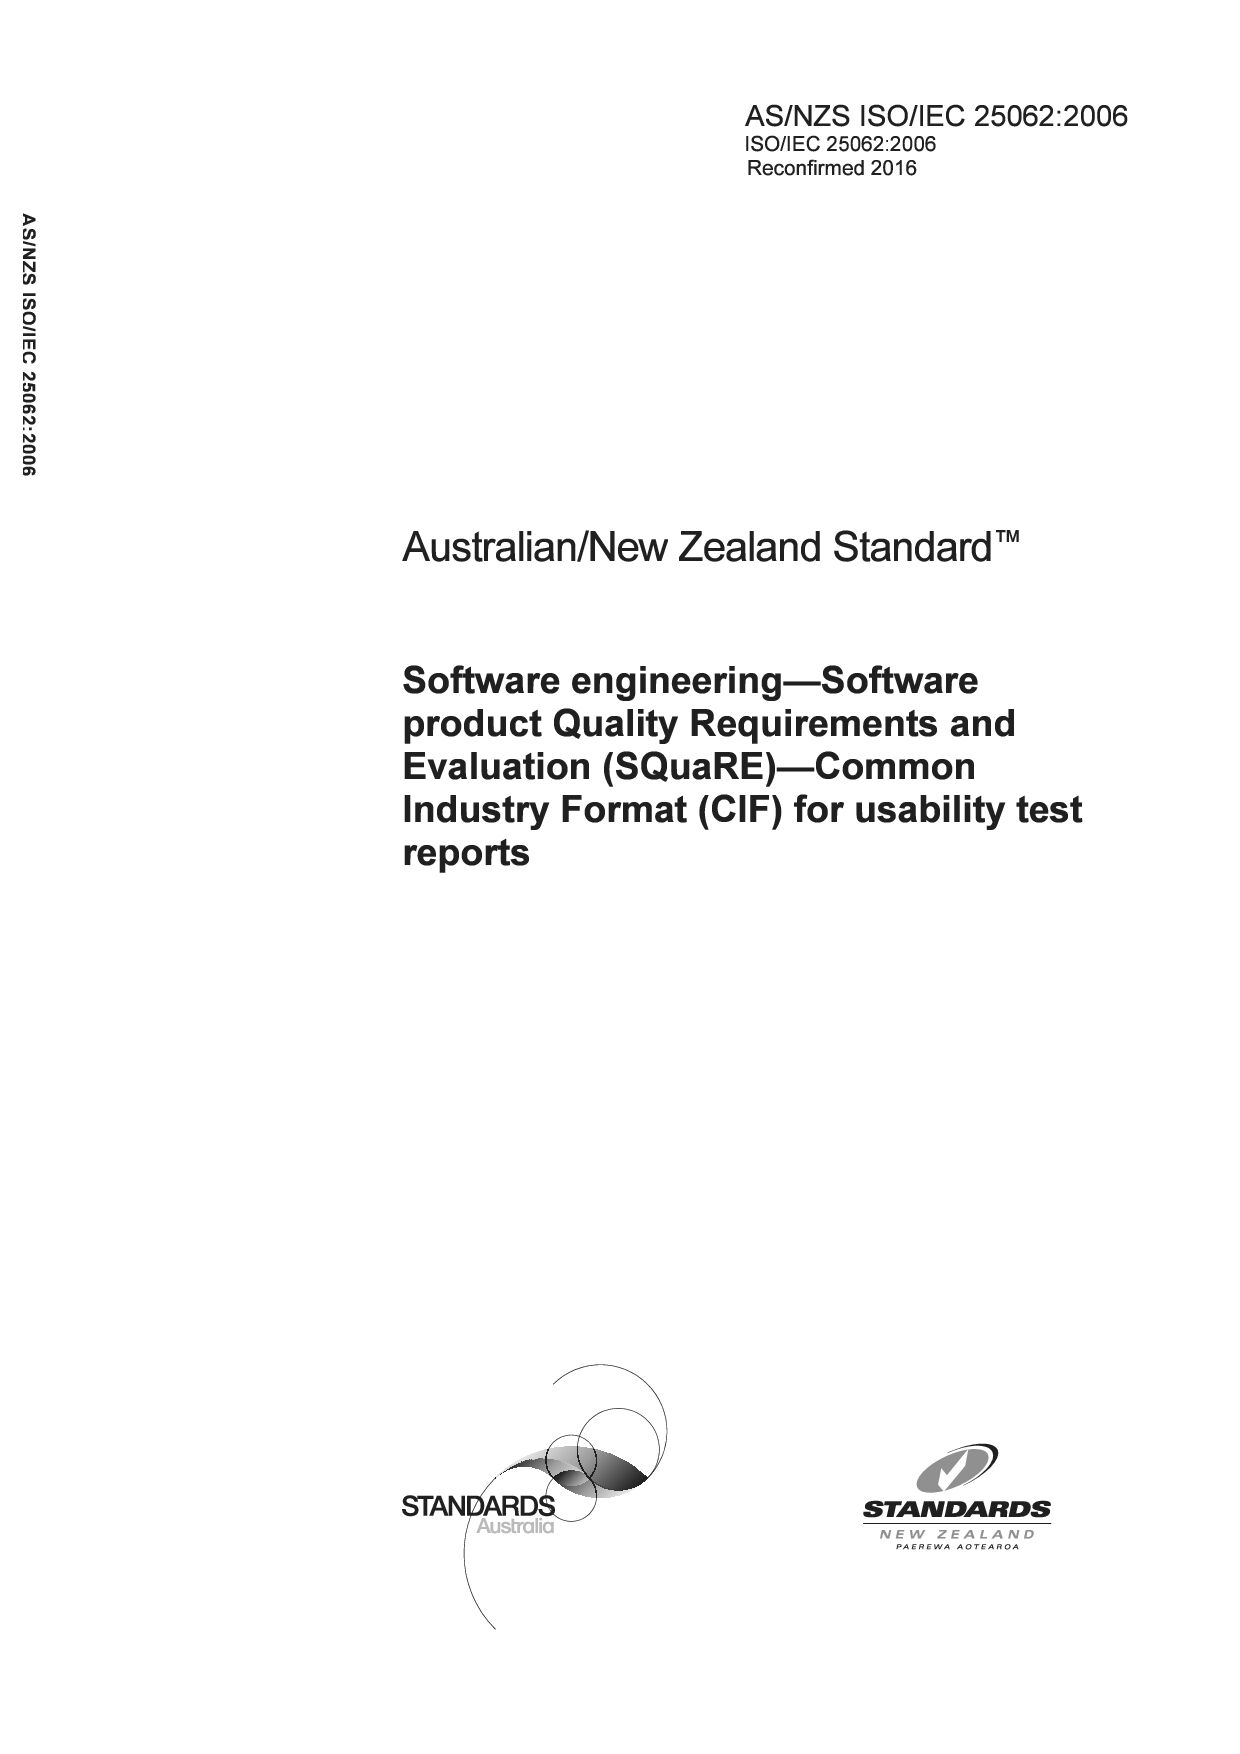 AS/NZS ISO/IEC 25062:2006(R2016)封面图